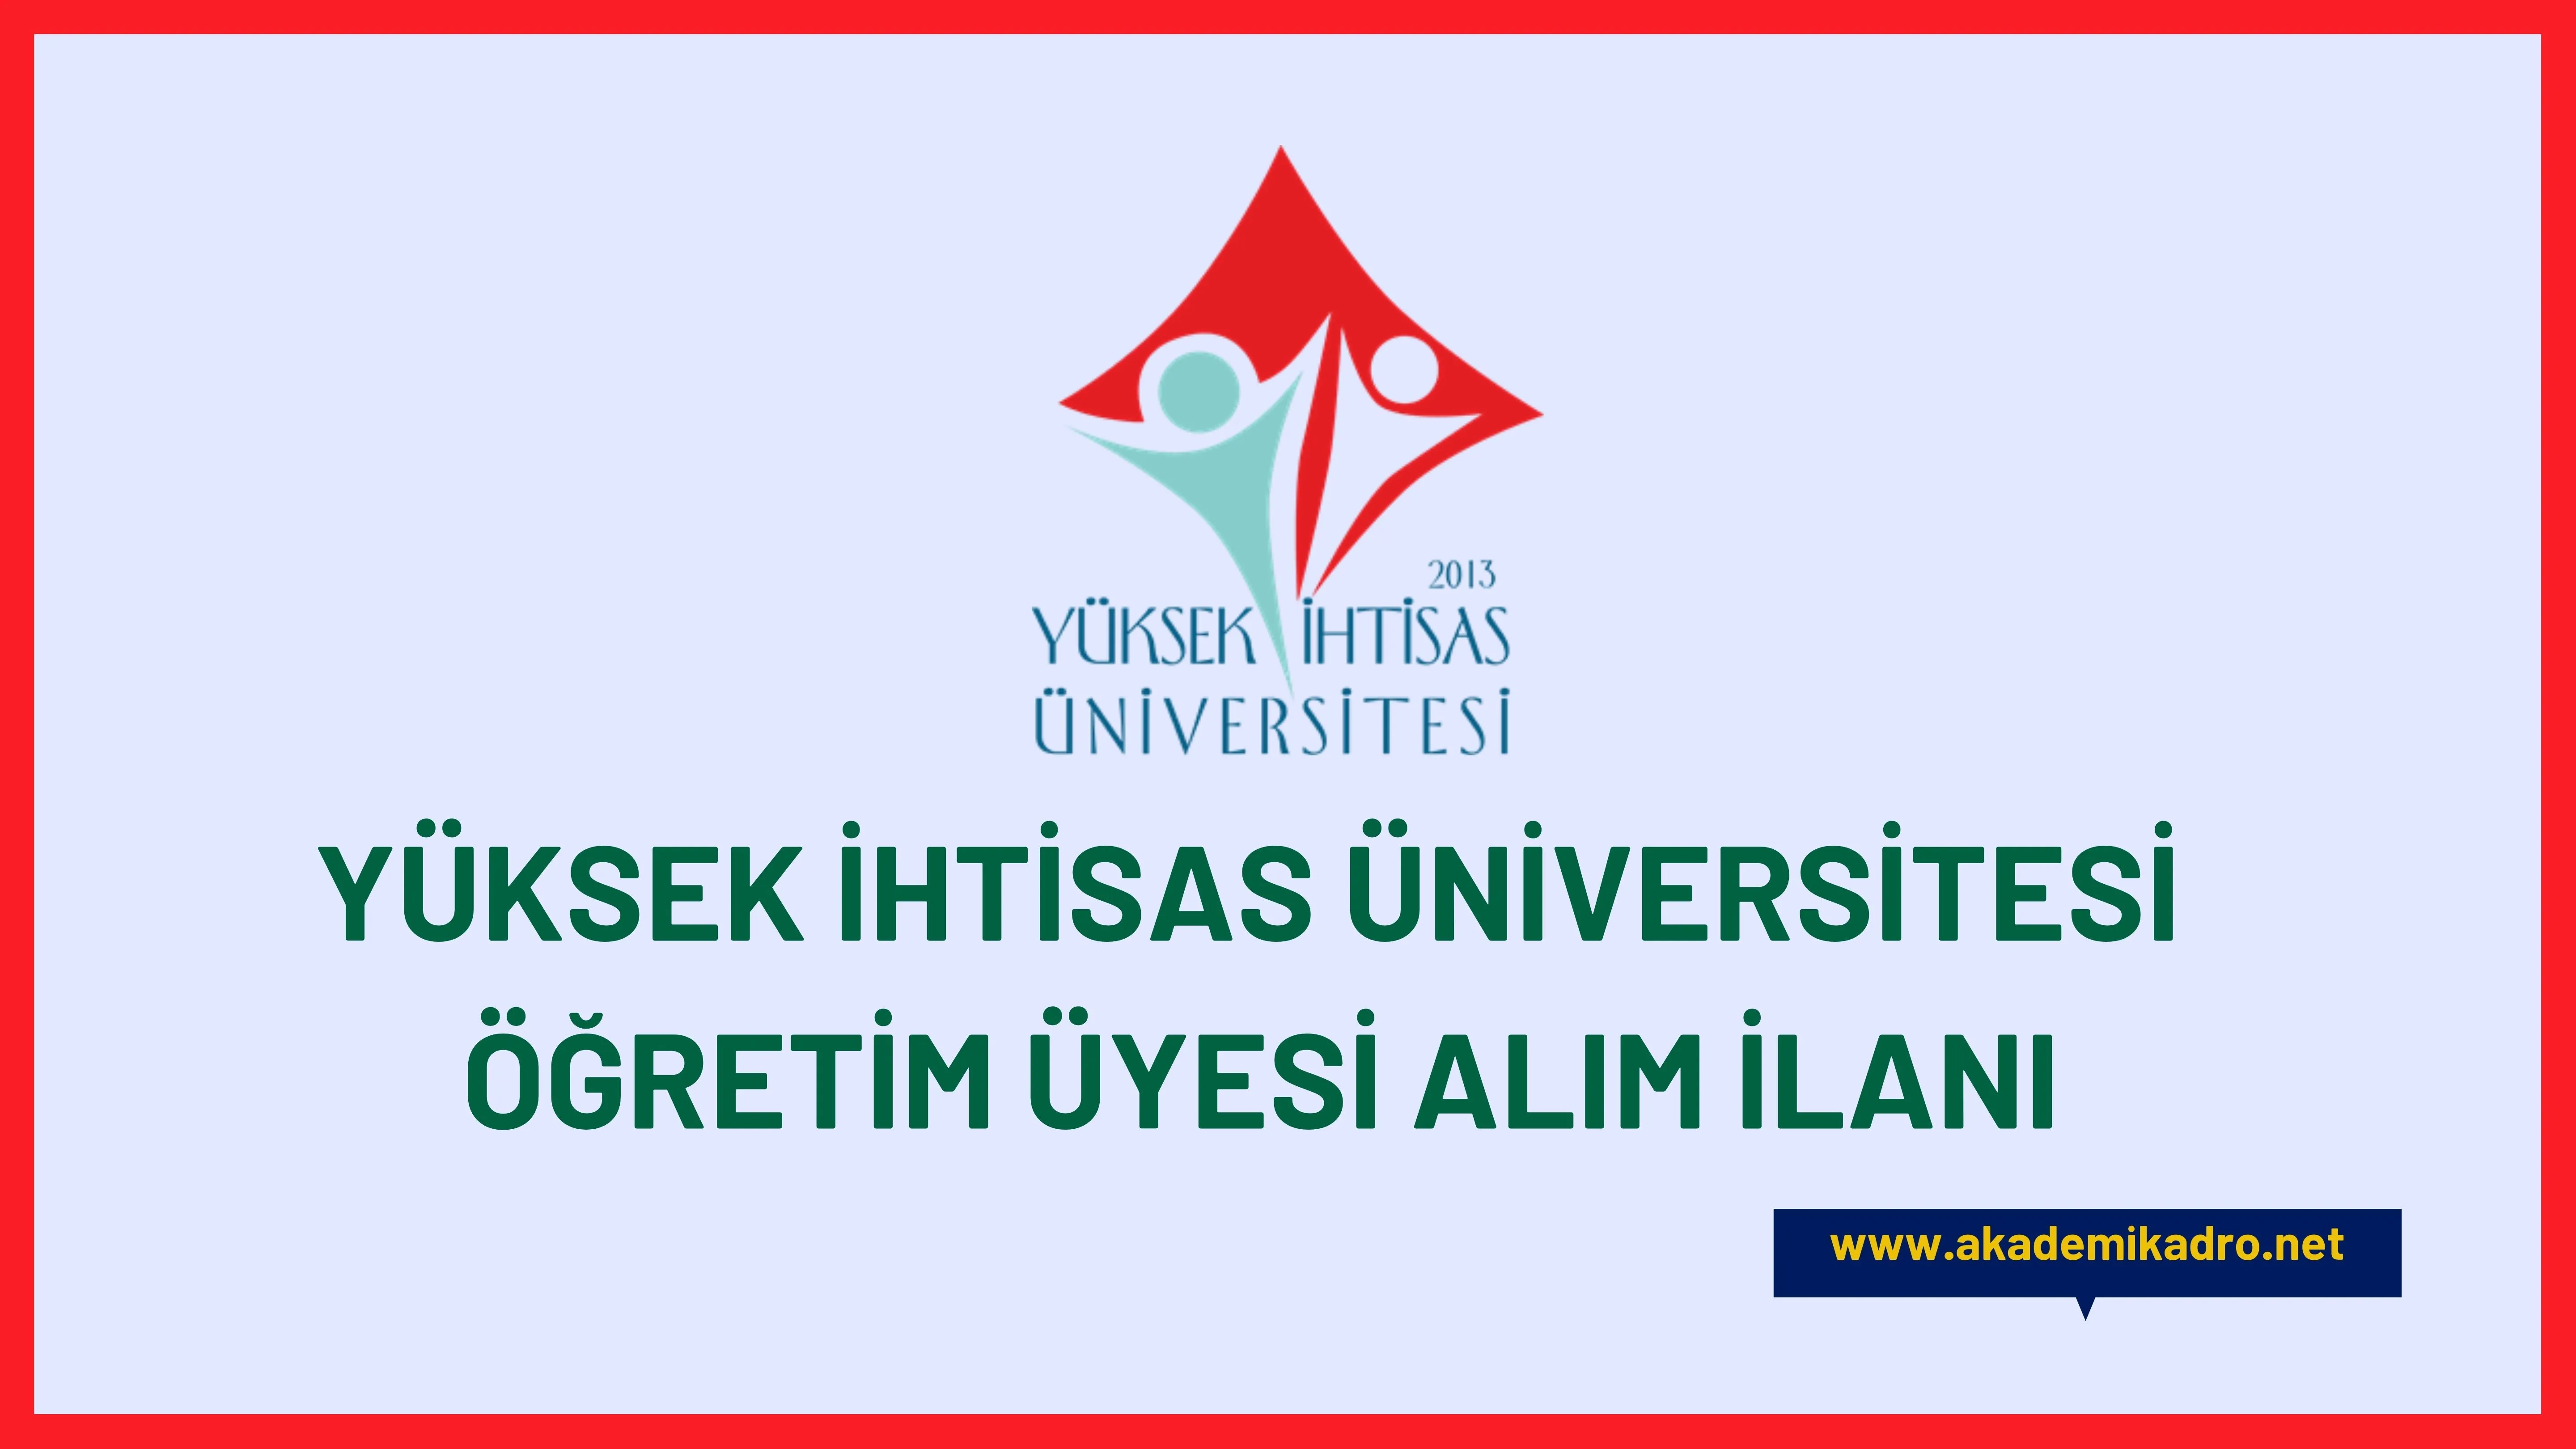 Yüksek İhtisas Üniversitesi 42 akademik personel alacaktır.